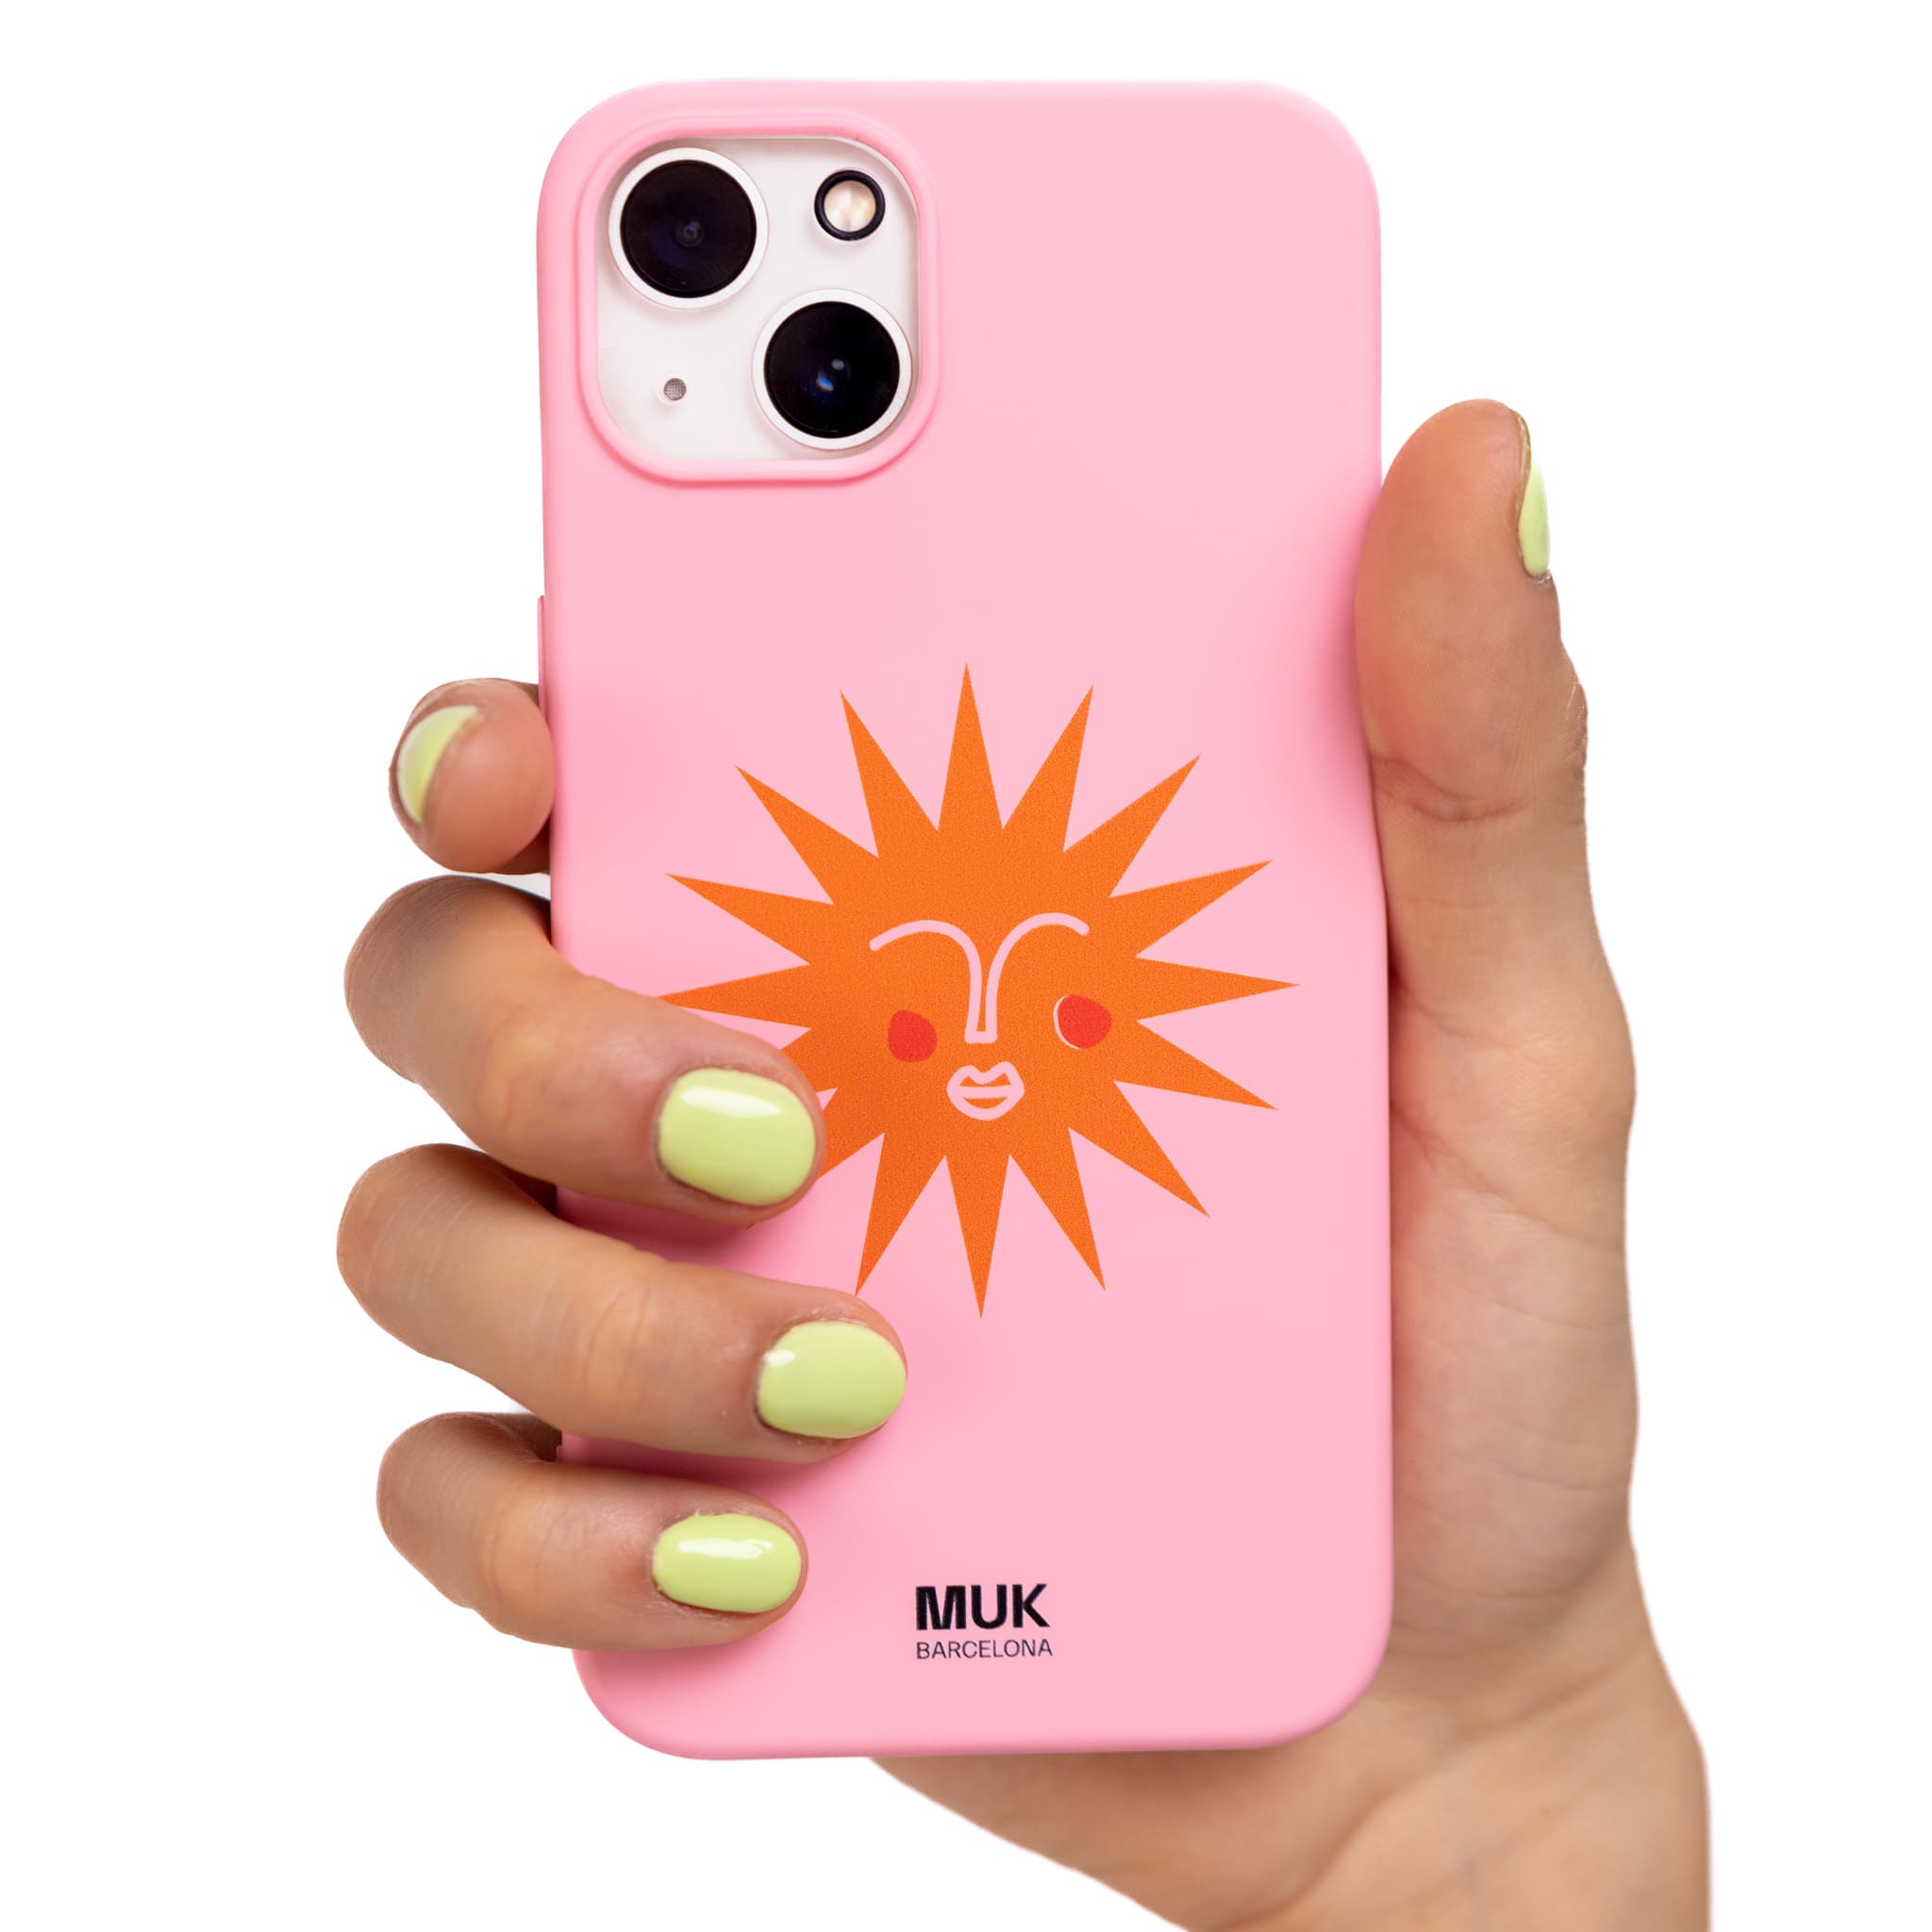 Funda de móvil TPU rosa con diseño de sol en color naranja.
